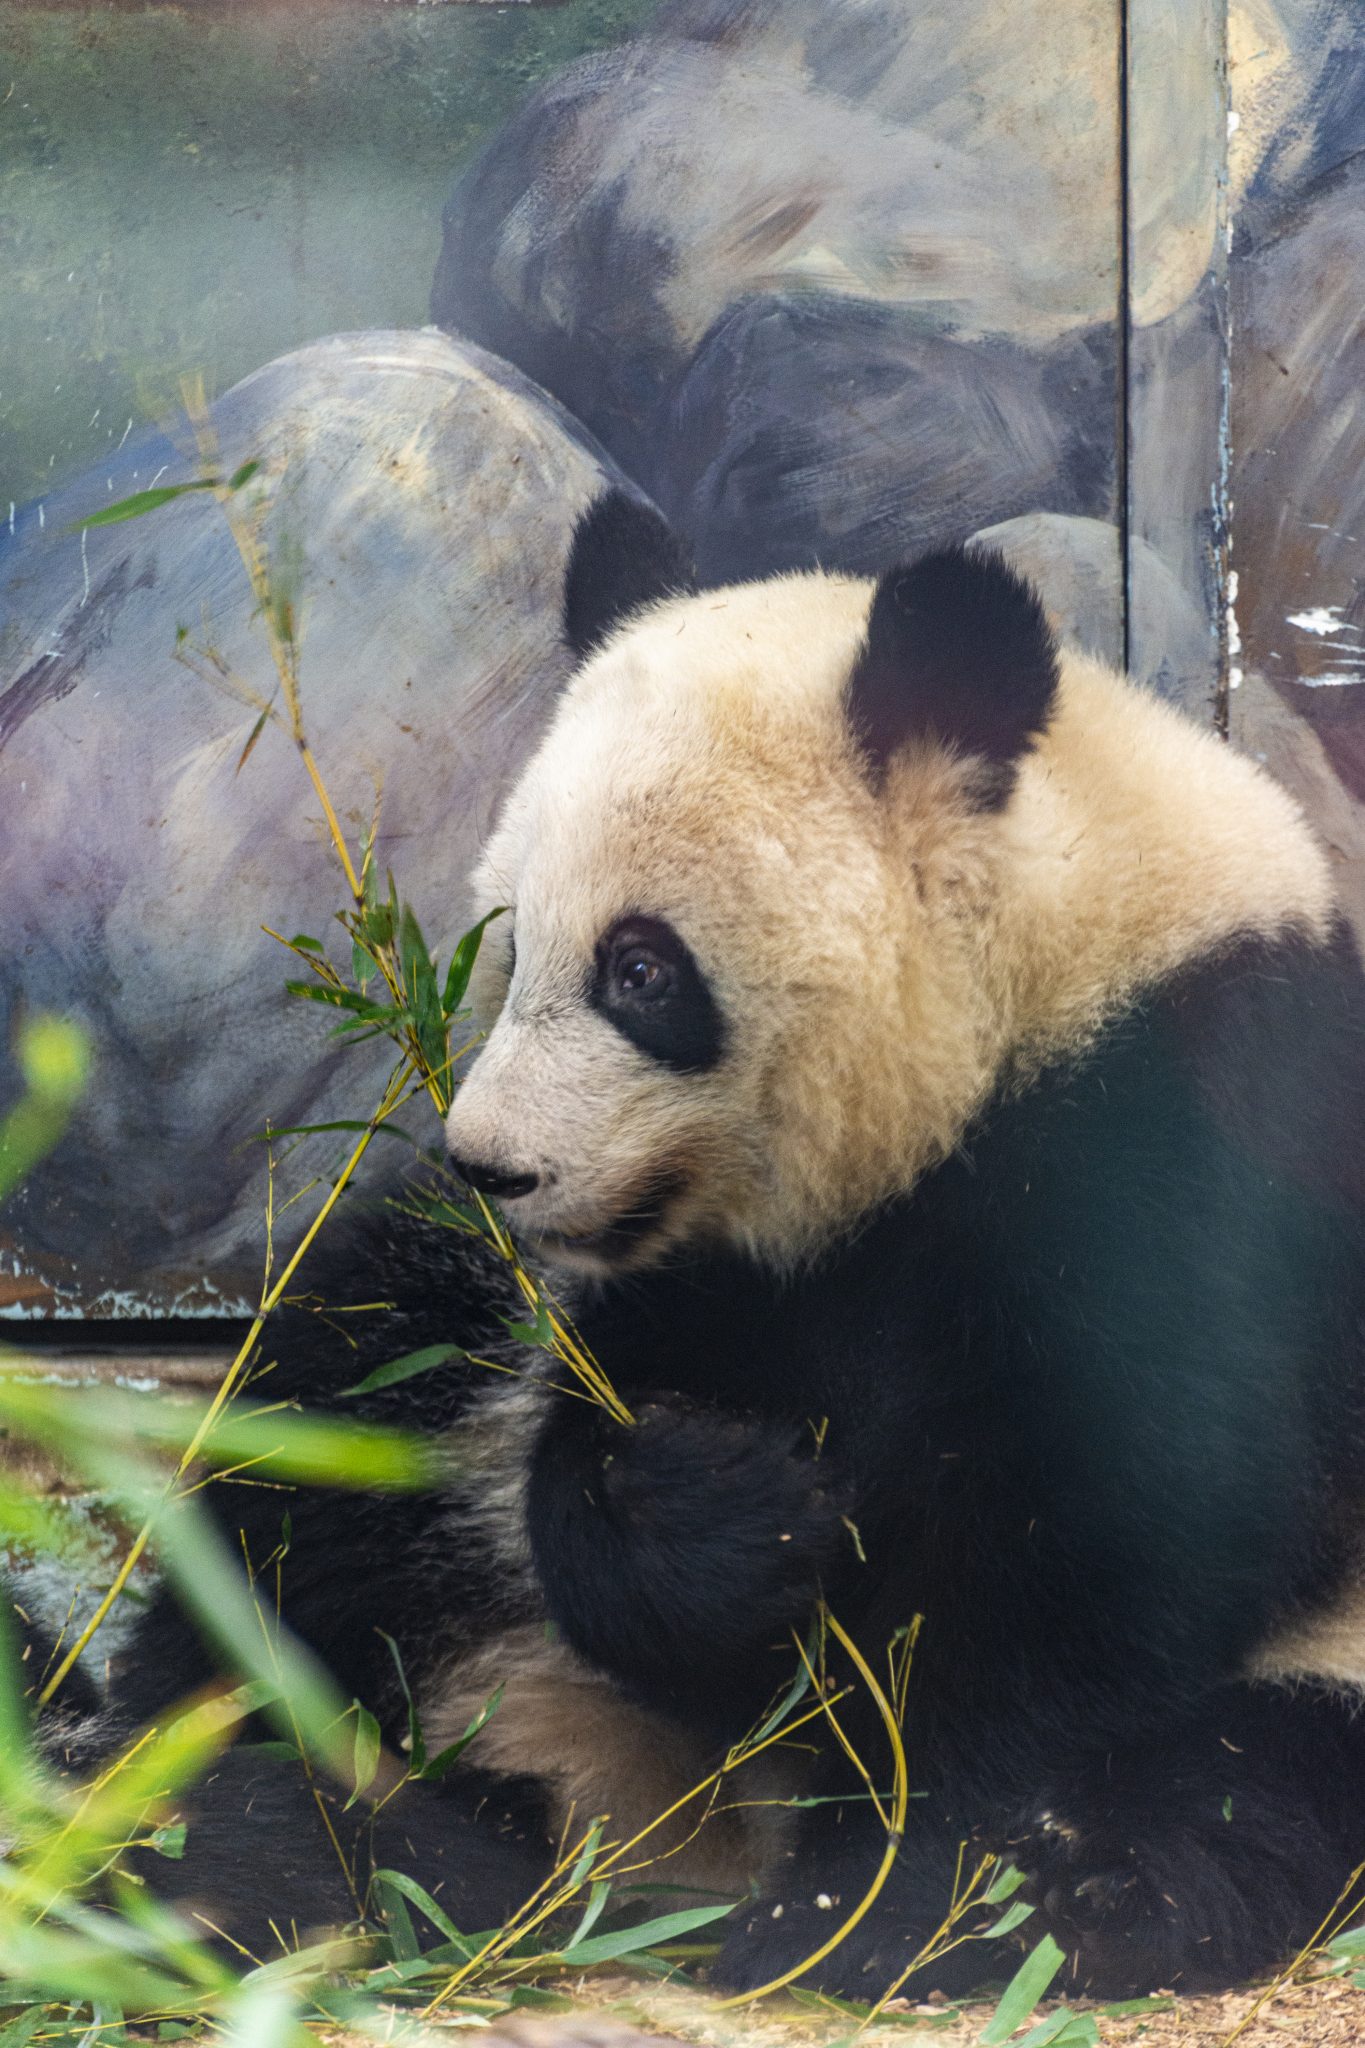 Panda sitting and eating bamboo shoots